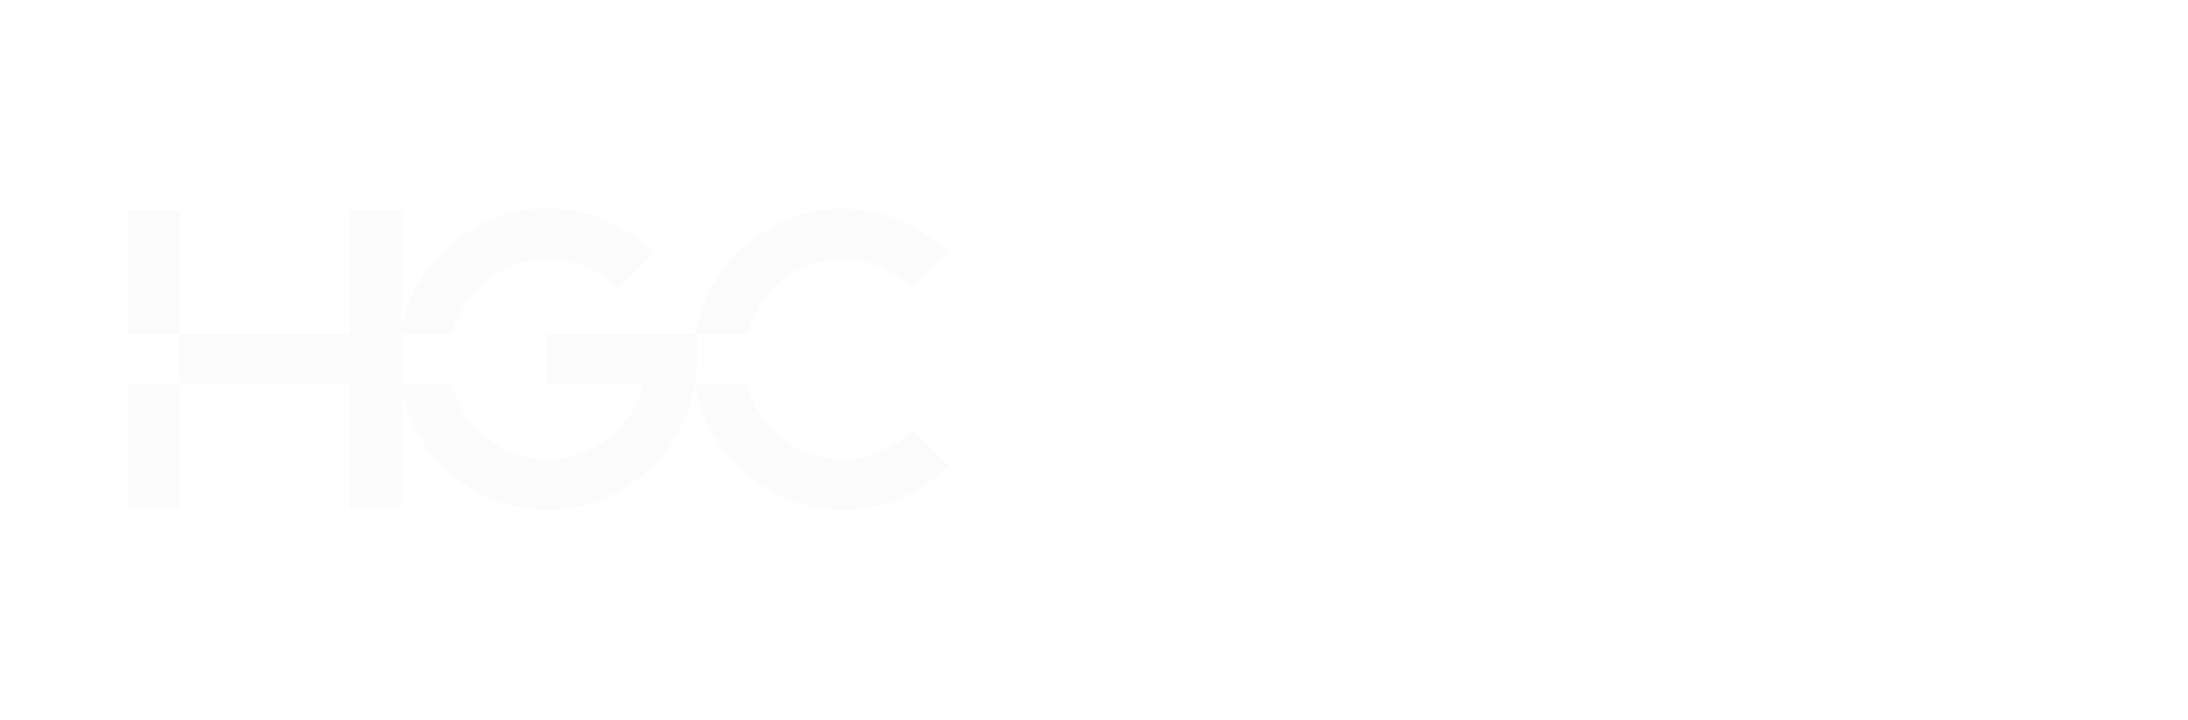 Logo des Hgc Global Communications-Unternehmens in Weiß auf schwarzem Hintergrund.